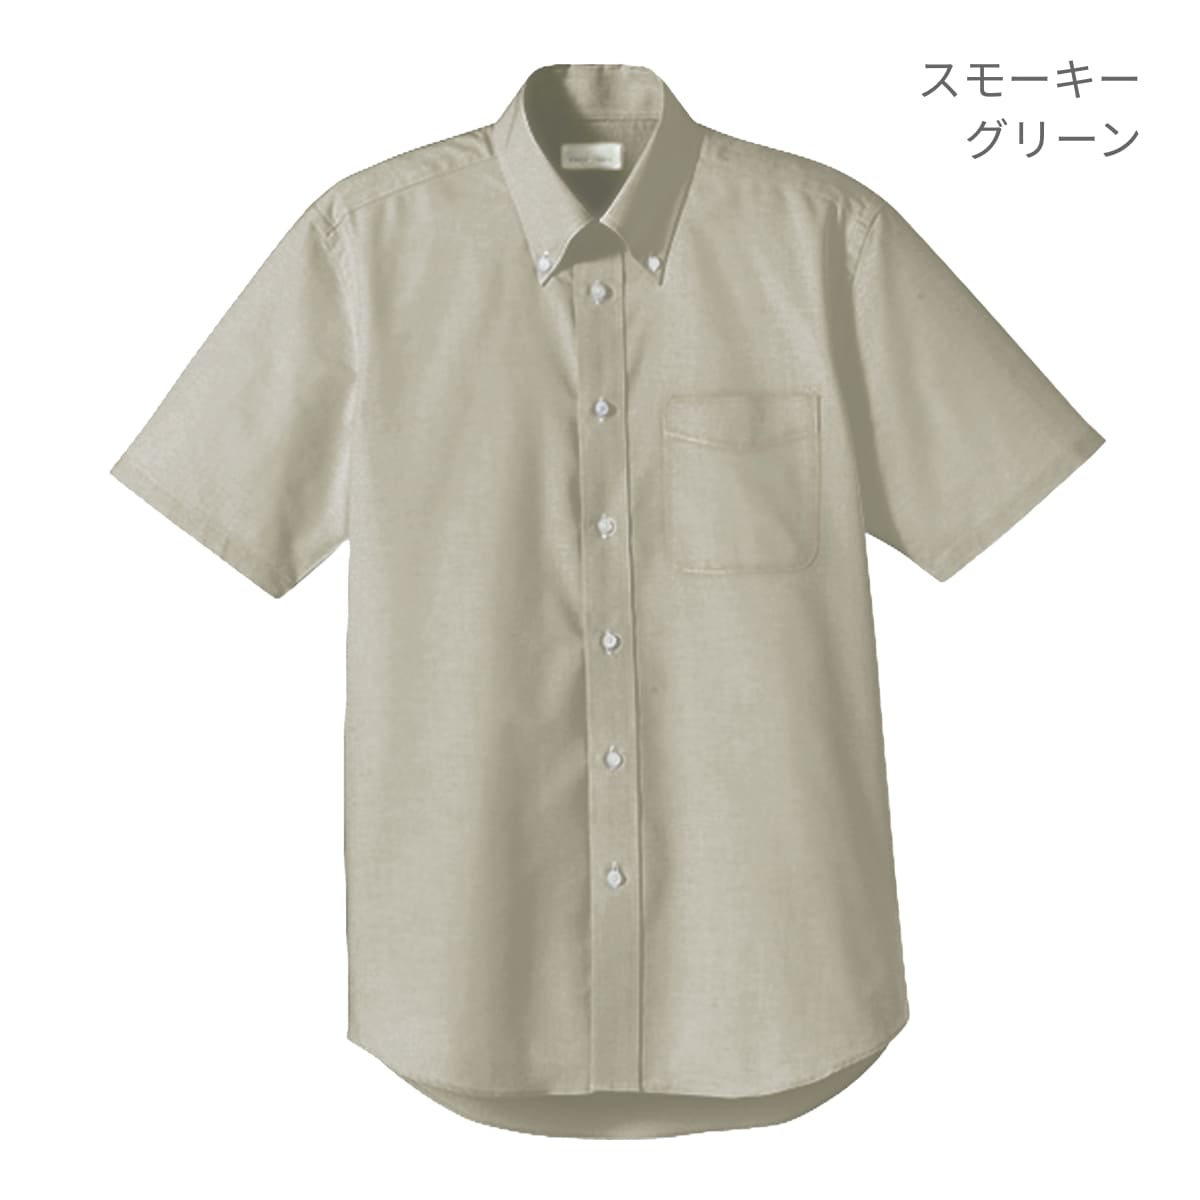 ユニセックスシャツ（半袖） | メンズ | 1枚 | FB4511U | ミント